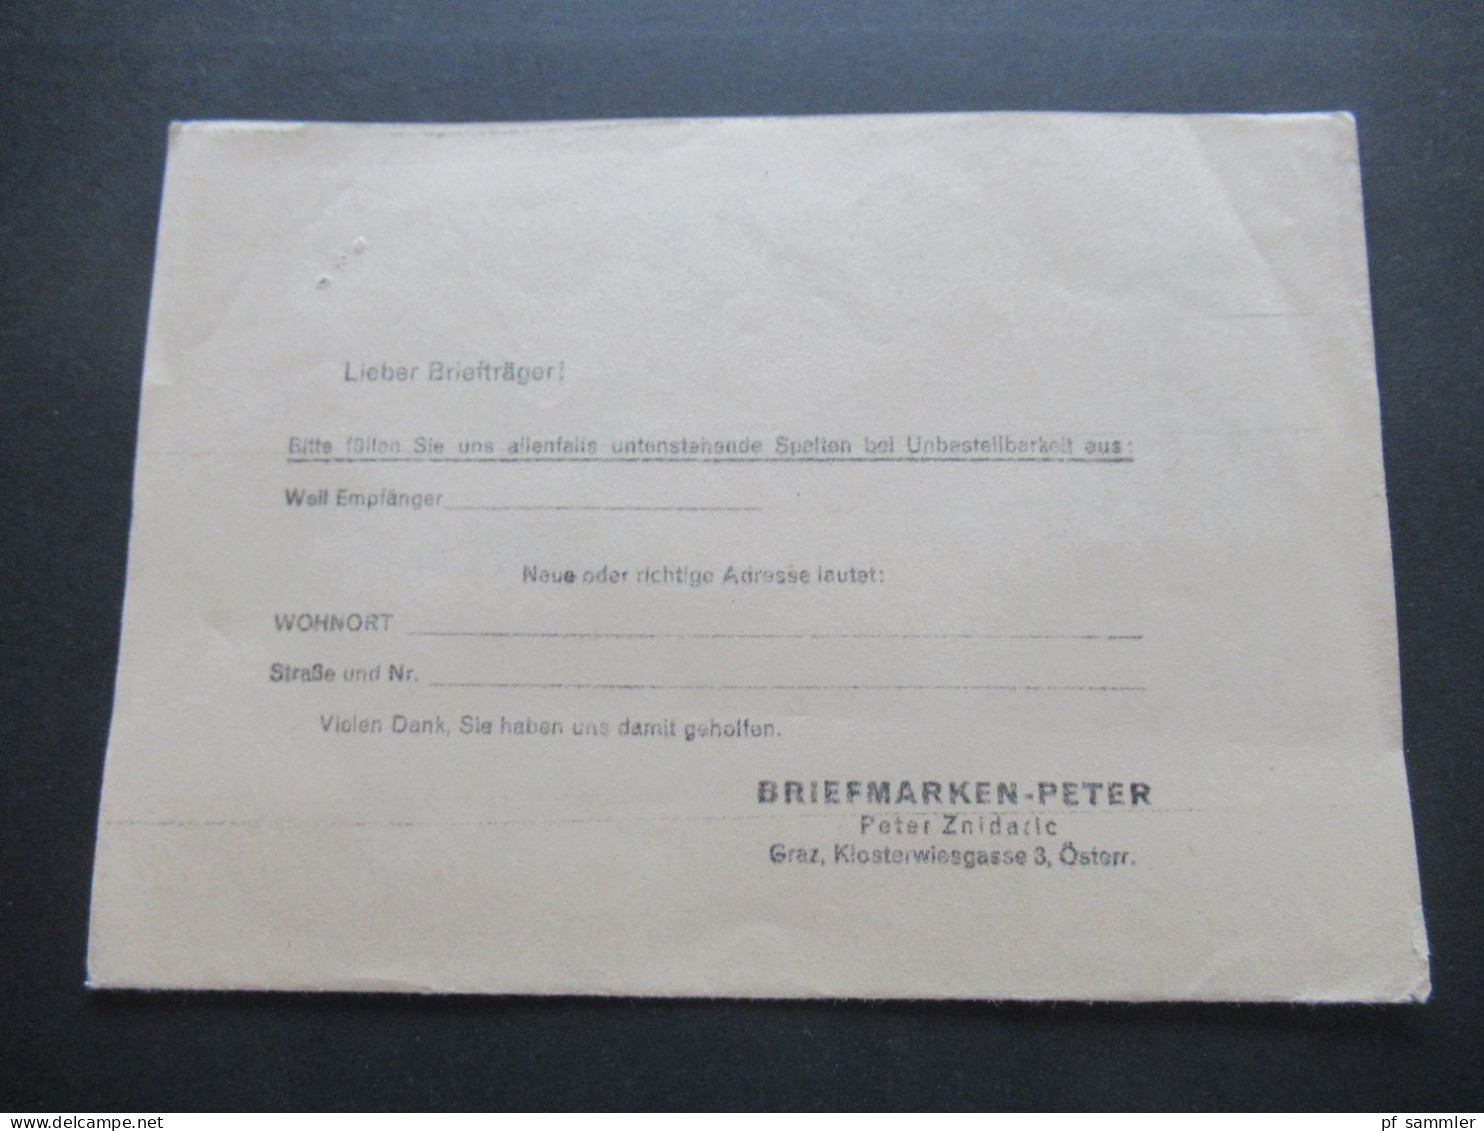 Österreich 1965 Freimarken EF Drucksache Briefmarken Peter Graz Klosterwiesgasse 4 / Austria Netto Ist Erschienen!! - Storia Postale